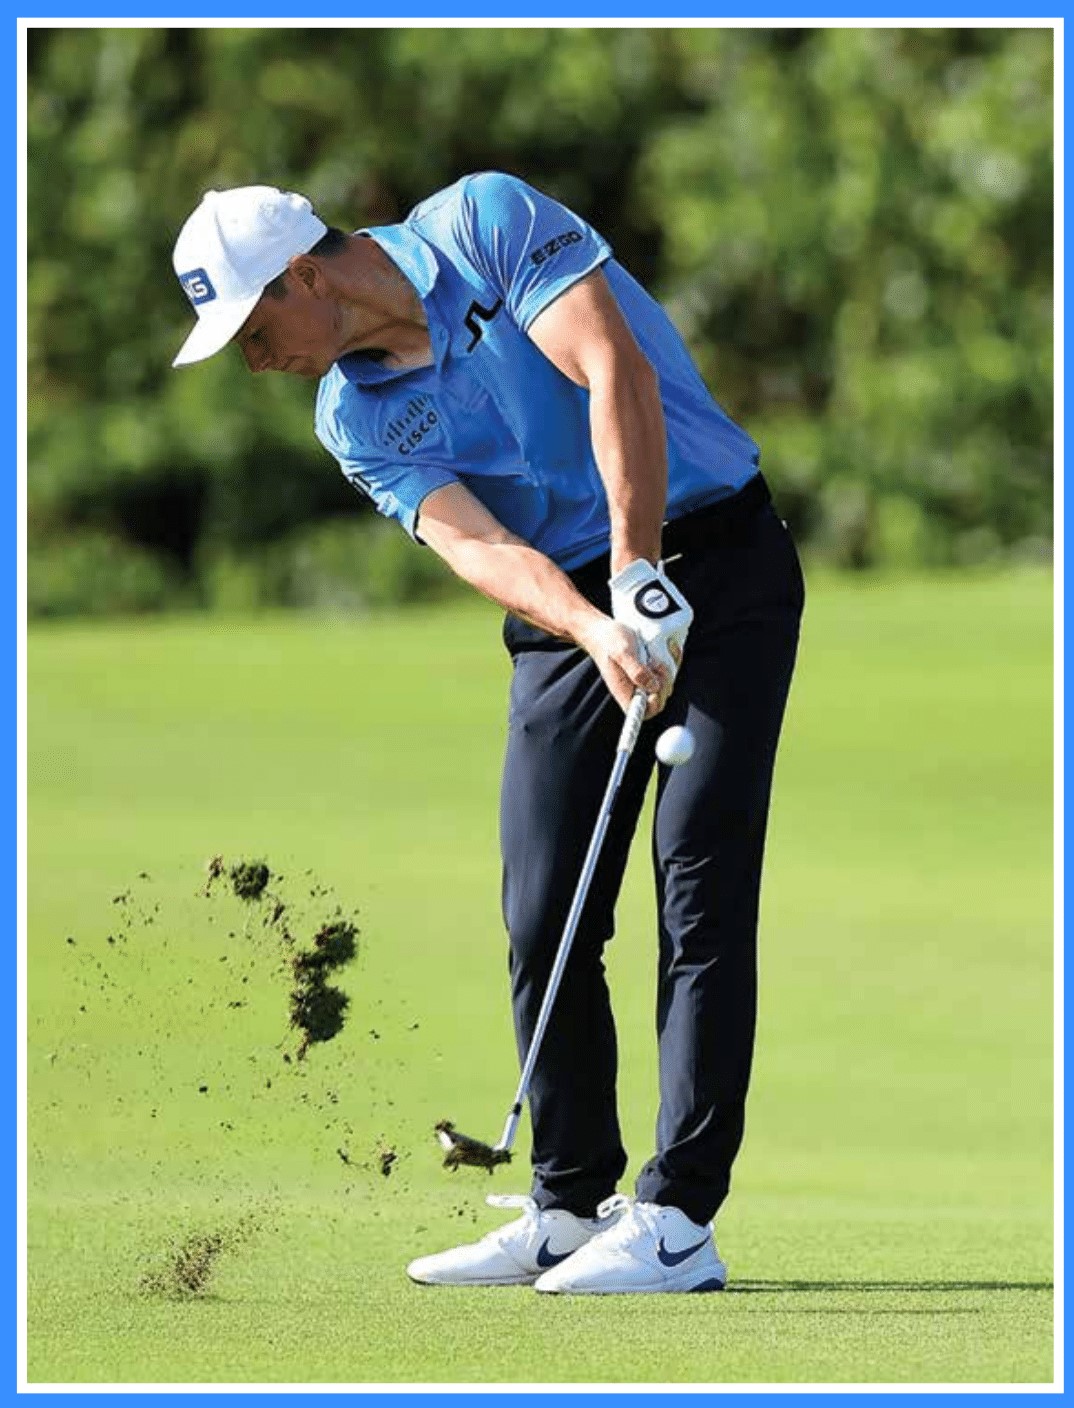 Tài năng trẻ Viktor Hovland hiện đang nắm giữ vị trí tân binh hạng nhất trên đấu trường golf khắc nghiệt nhất thế giới - PGA Tour